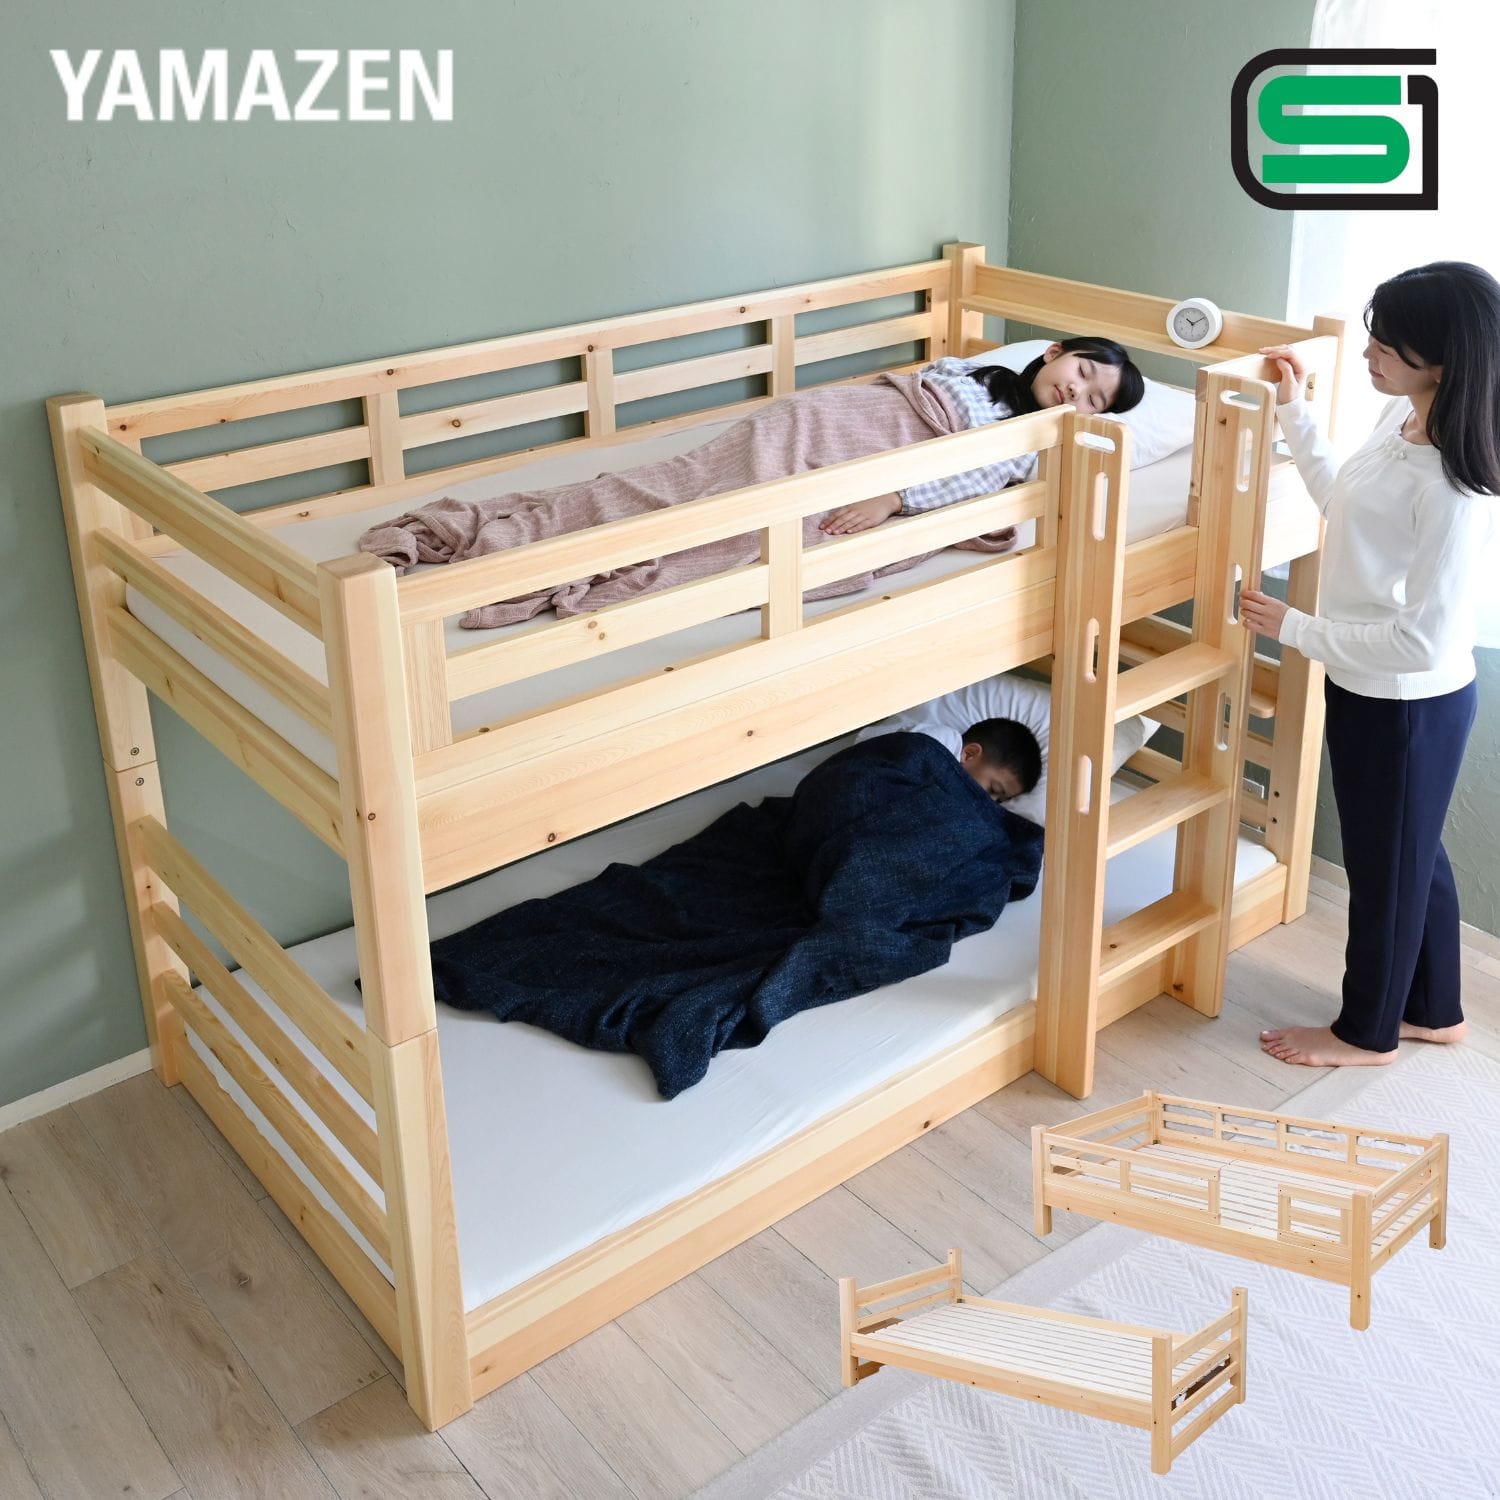 2段ベッド 幅206 奥行115 高さ135cm 分割 木製 すのこ シングル S2B 